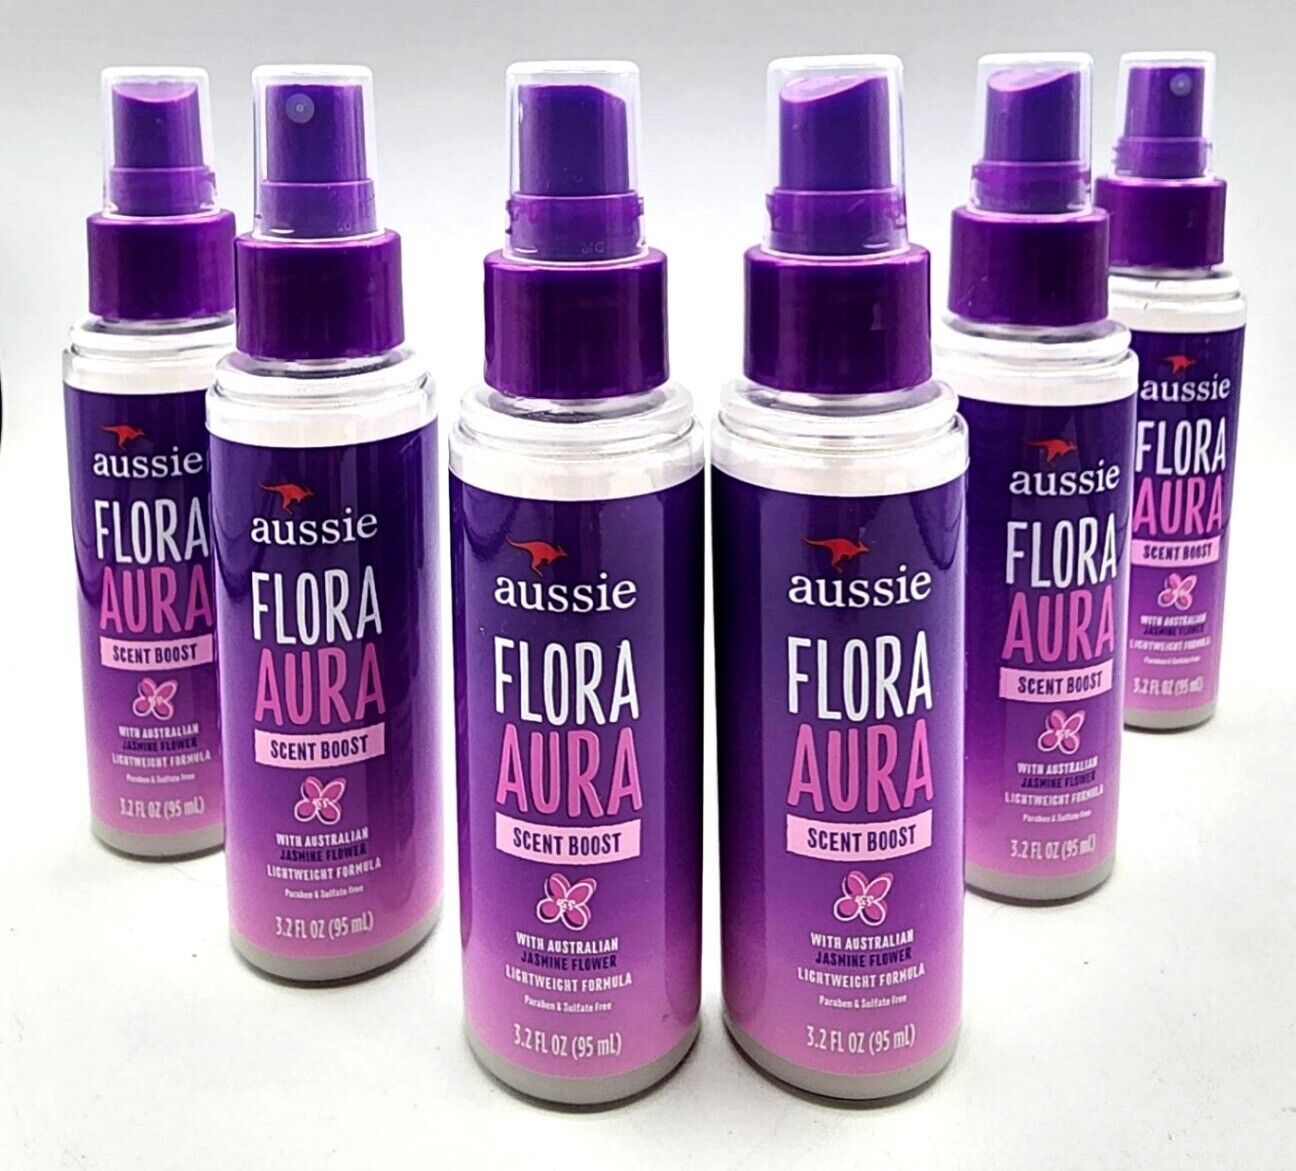 6 Aussie FLORA AURA SCENT BOOST "Hair Perfume" Spray Australian Jasmine Flower - $34.97